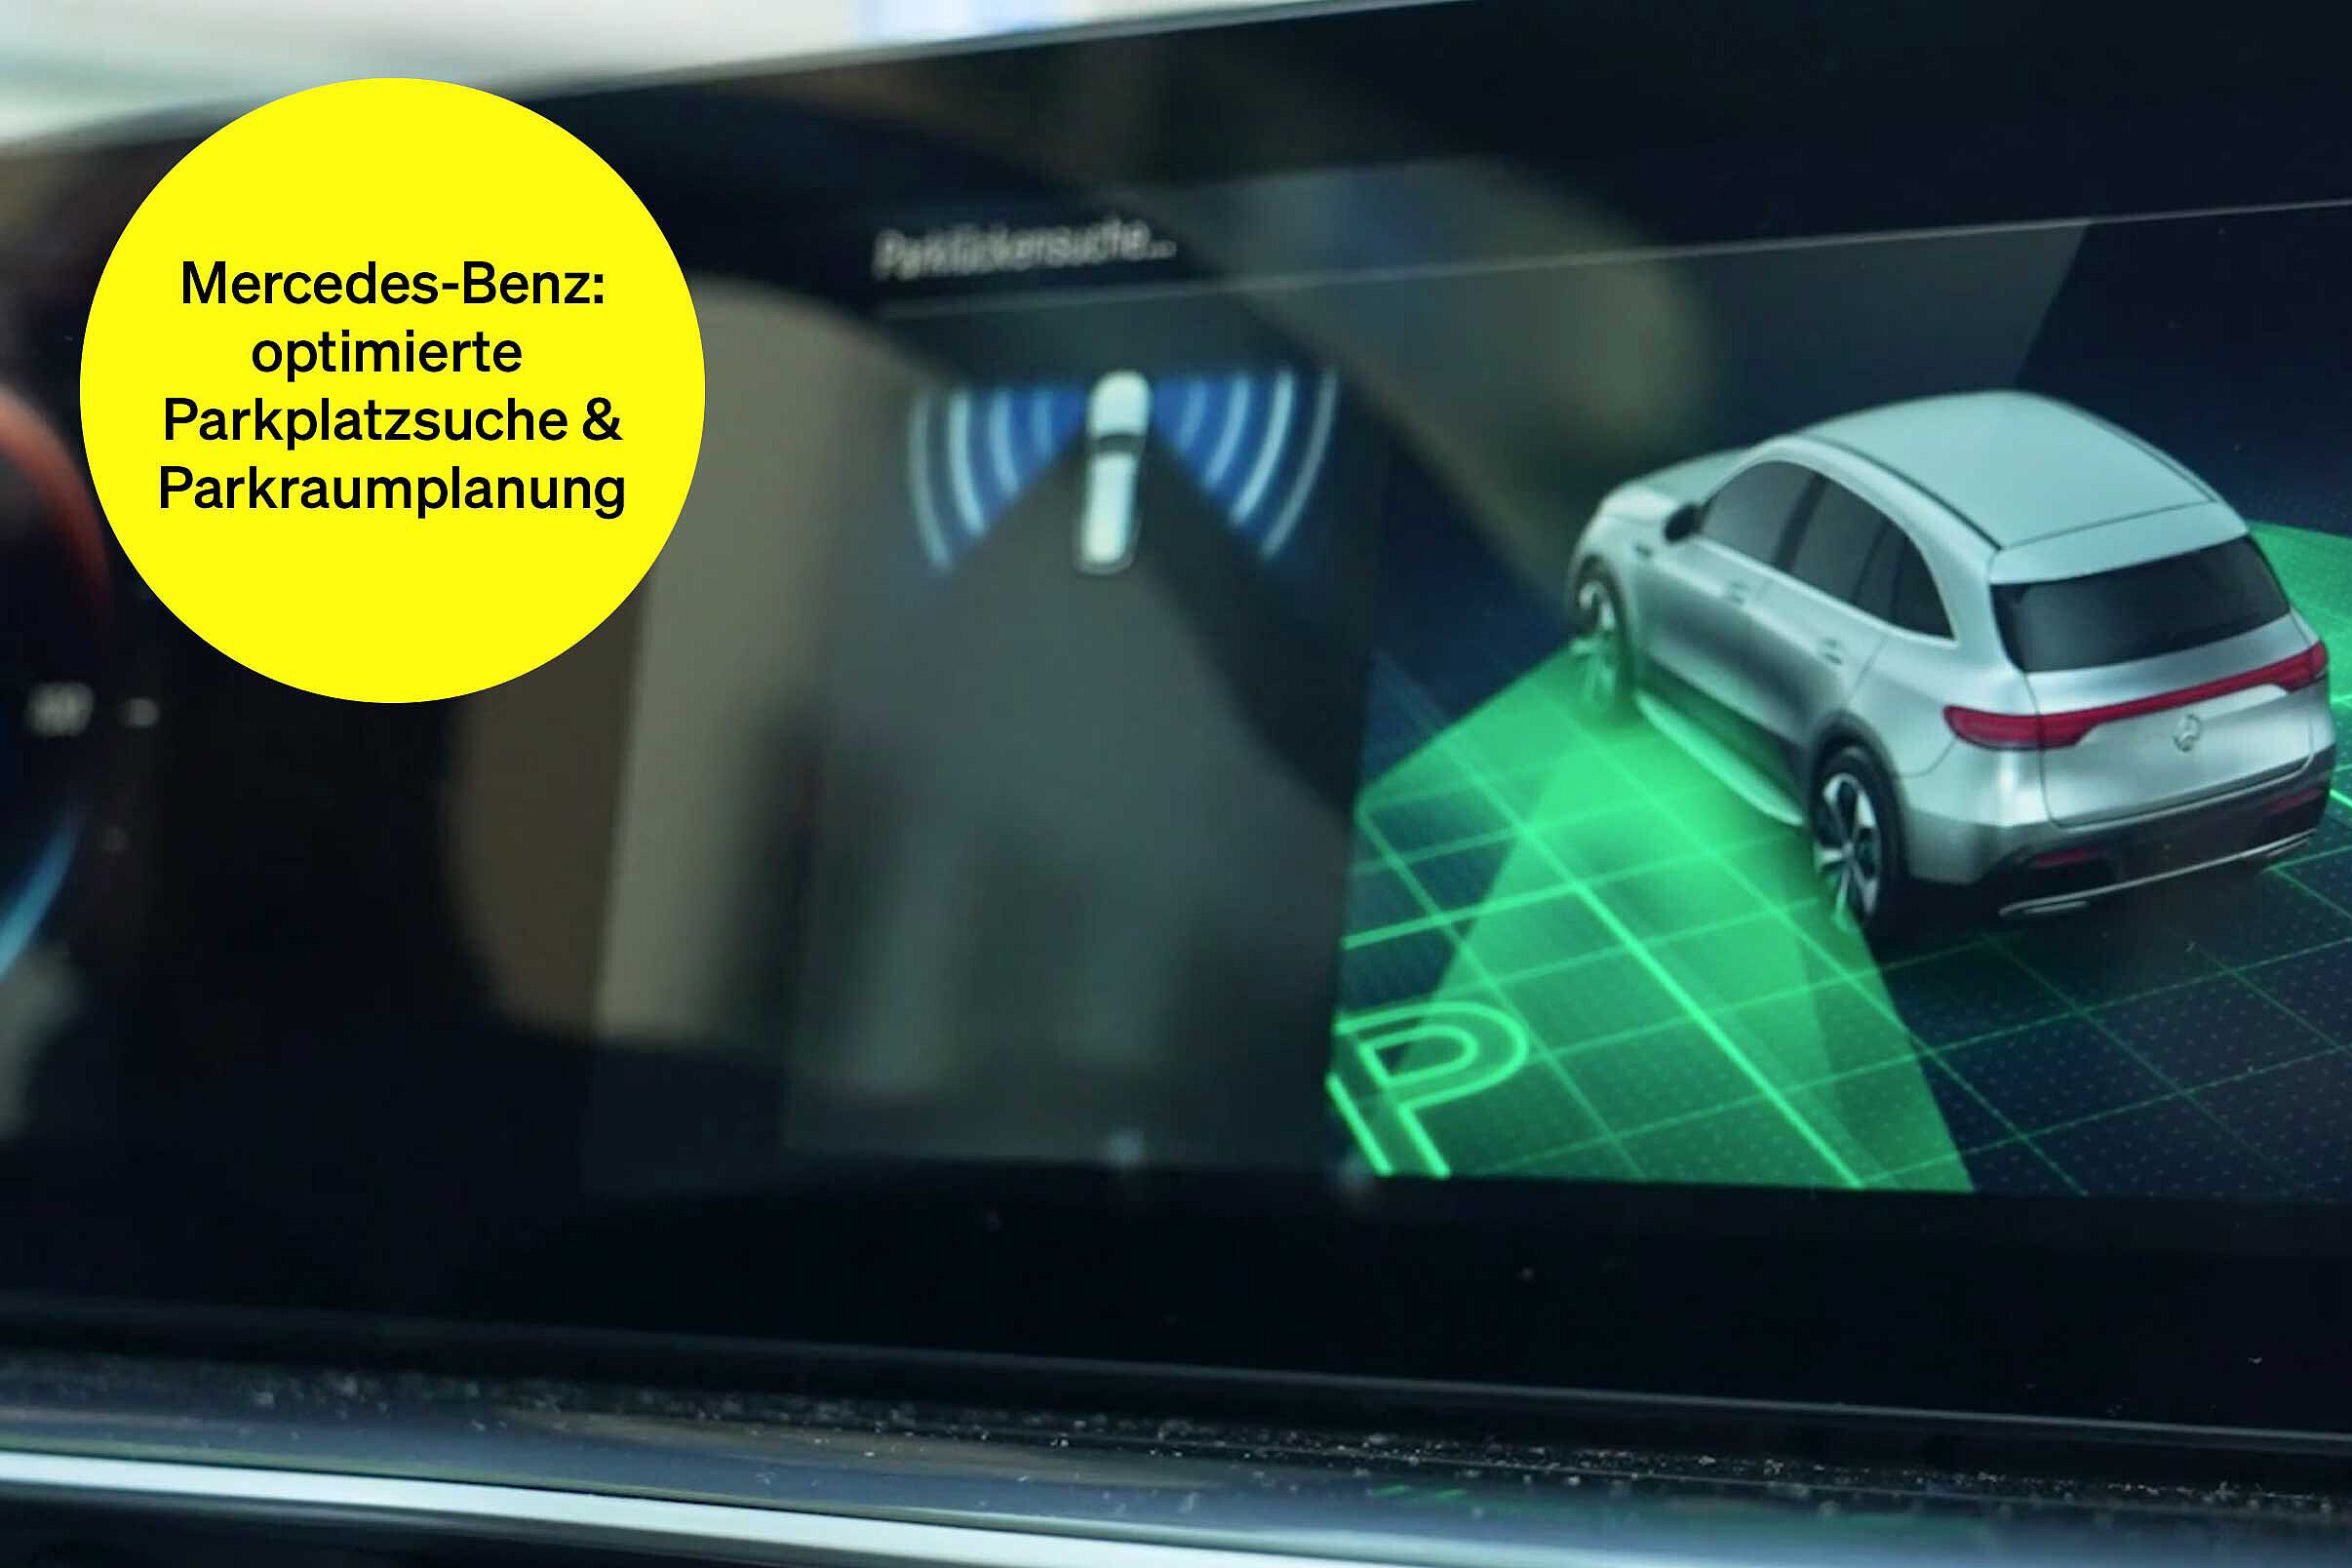 Parksensor-Anzeige im Auto – Textbaustein in runder Kachel: Mercedes-Benz optimieren Parkplatzsuche & Parkraumplanung